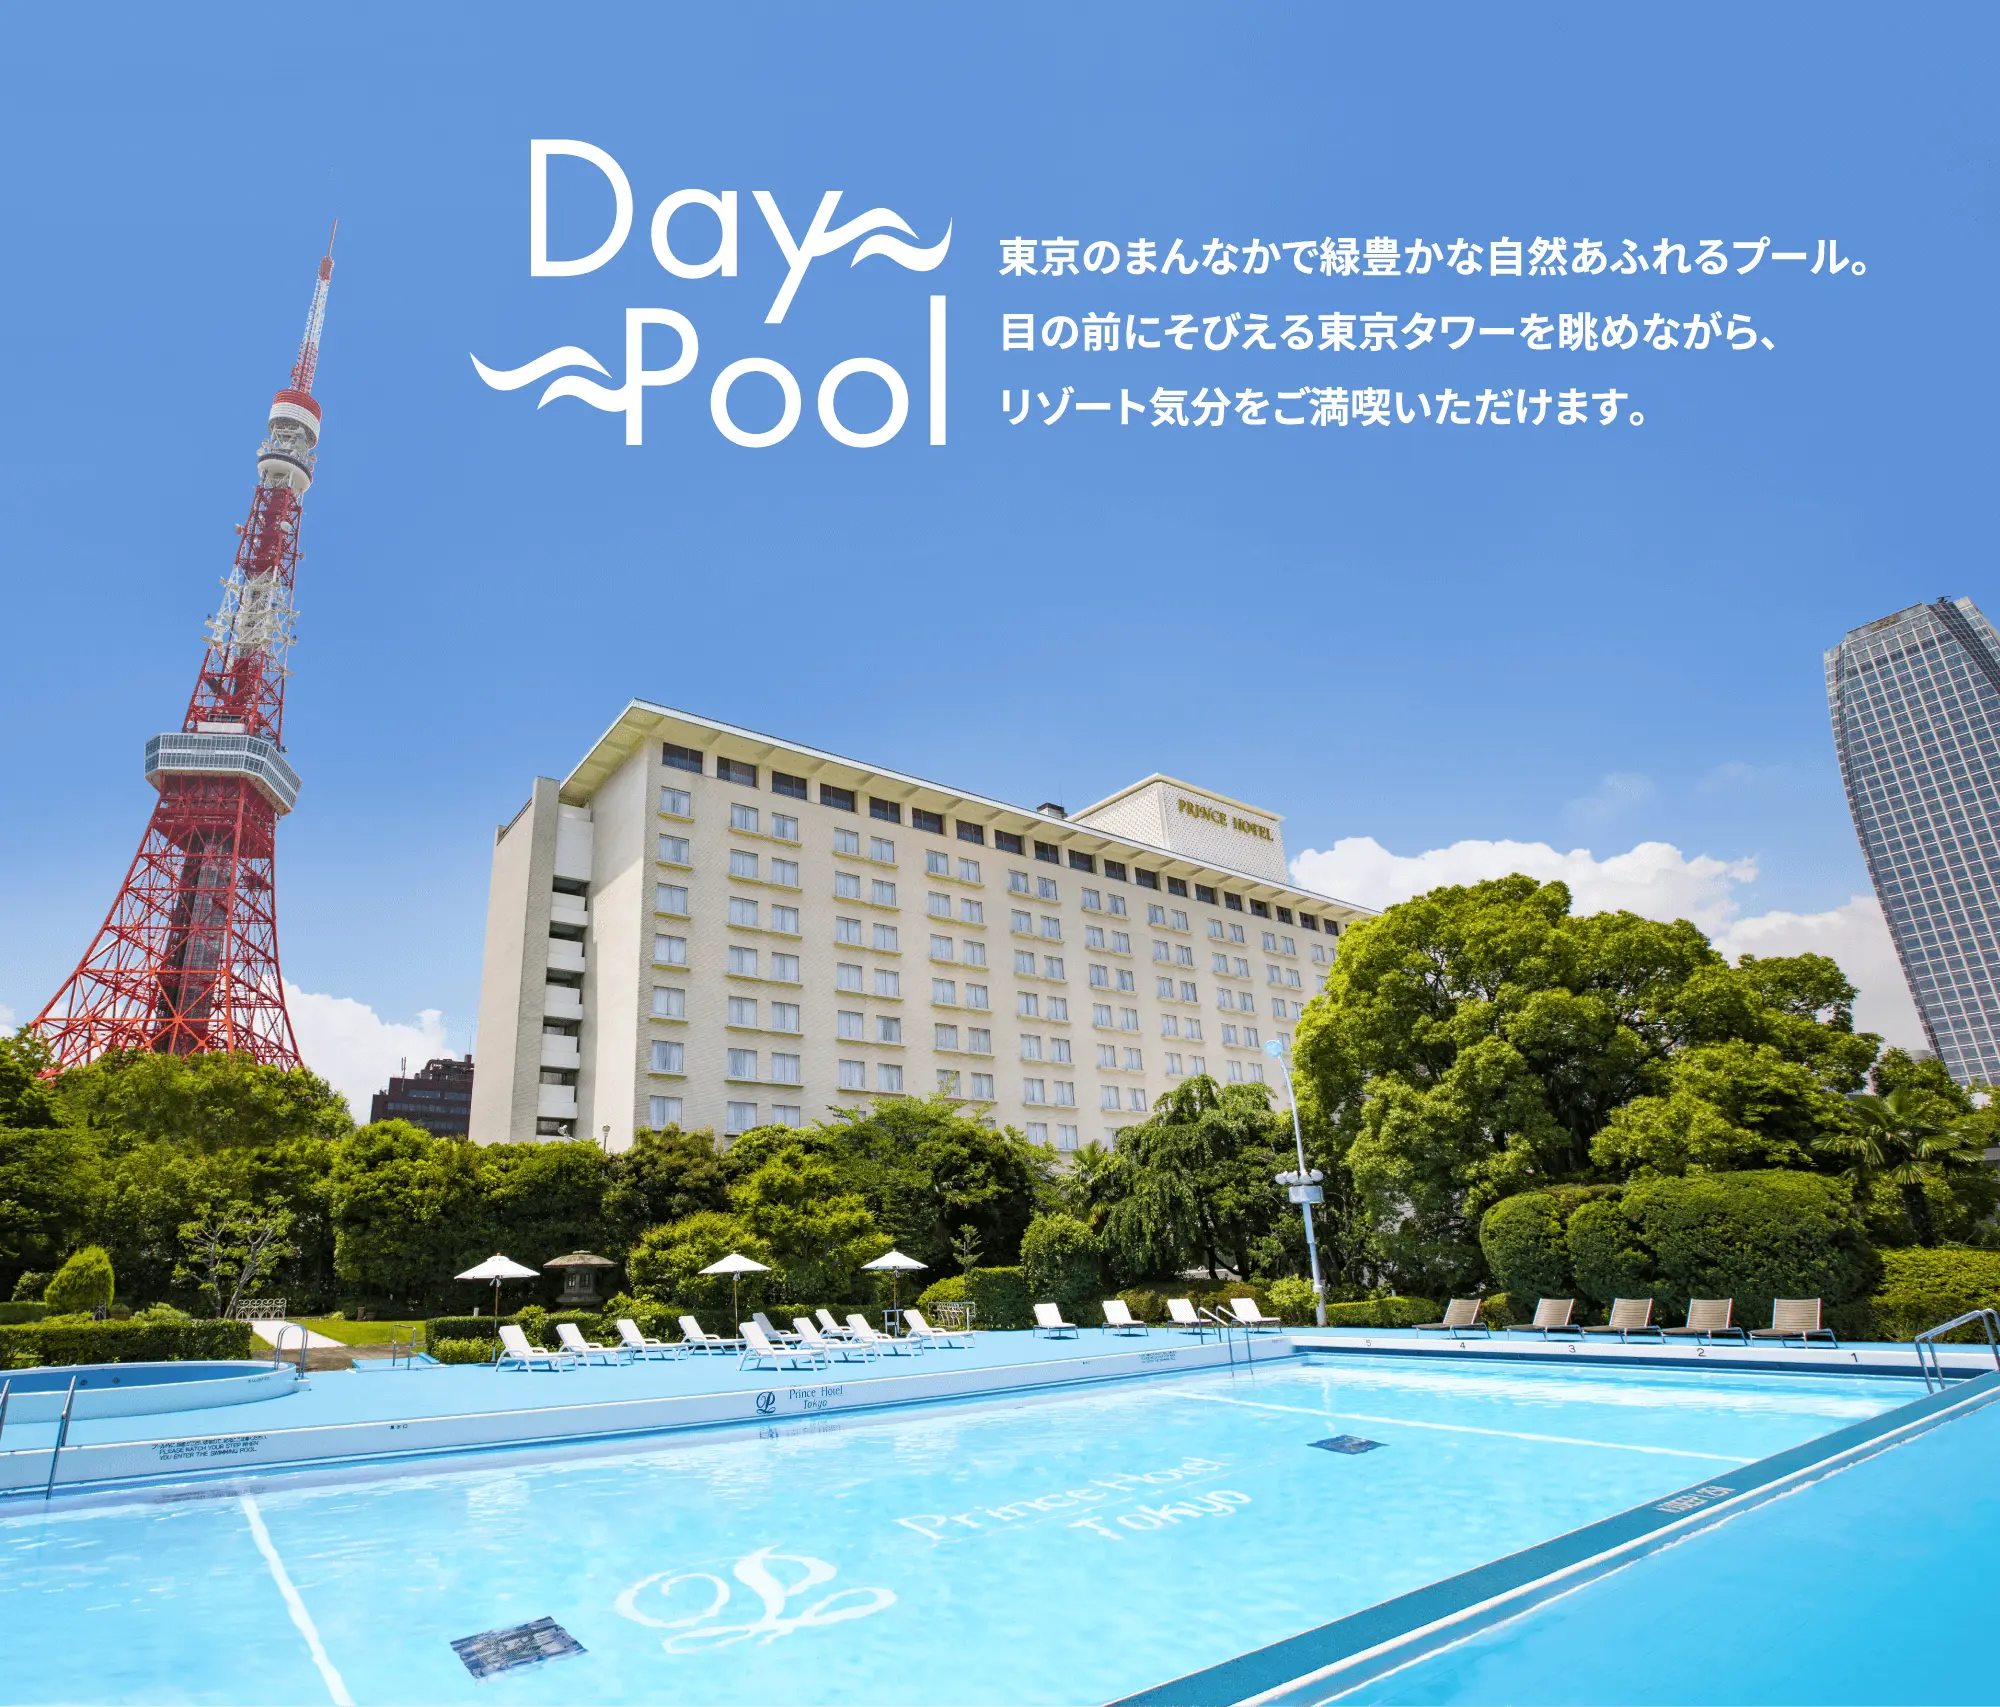  Day Pool 東京のまんなかで緑豊かな自然あふれるプール。目の前にそびえる東京タワーを眺めながら、リゾート気分をご満喫いただけます。